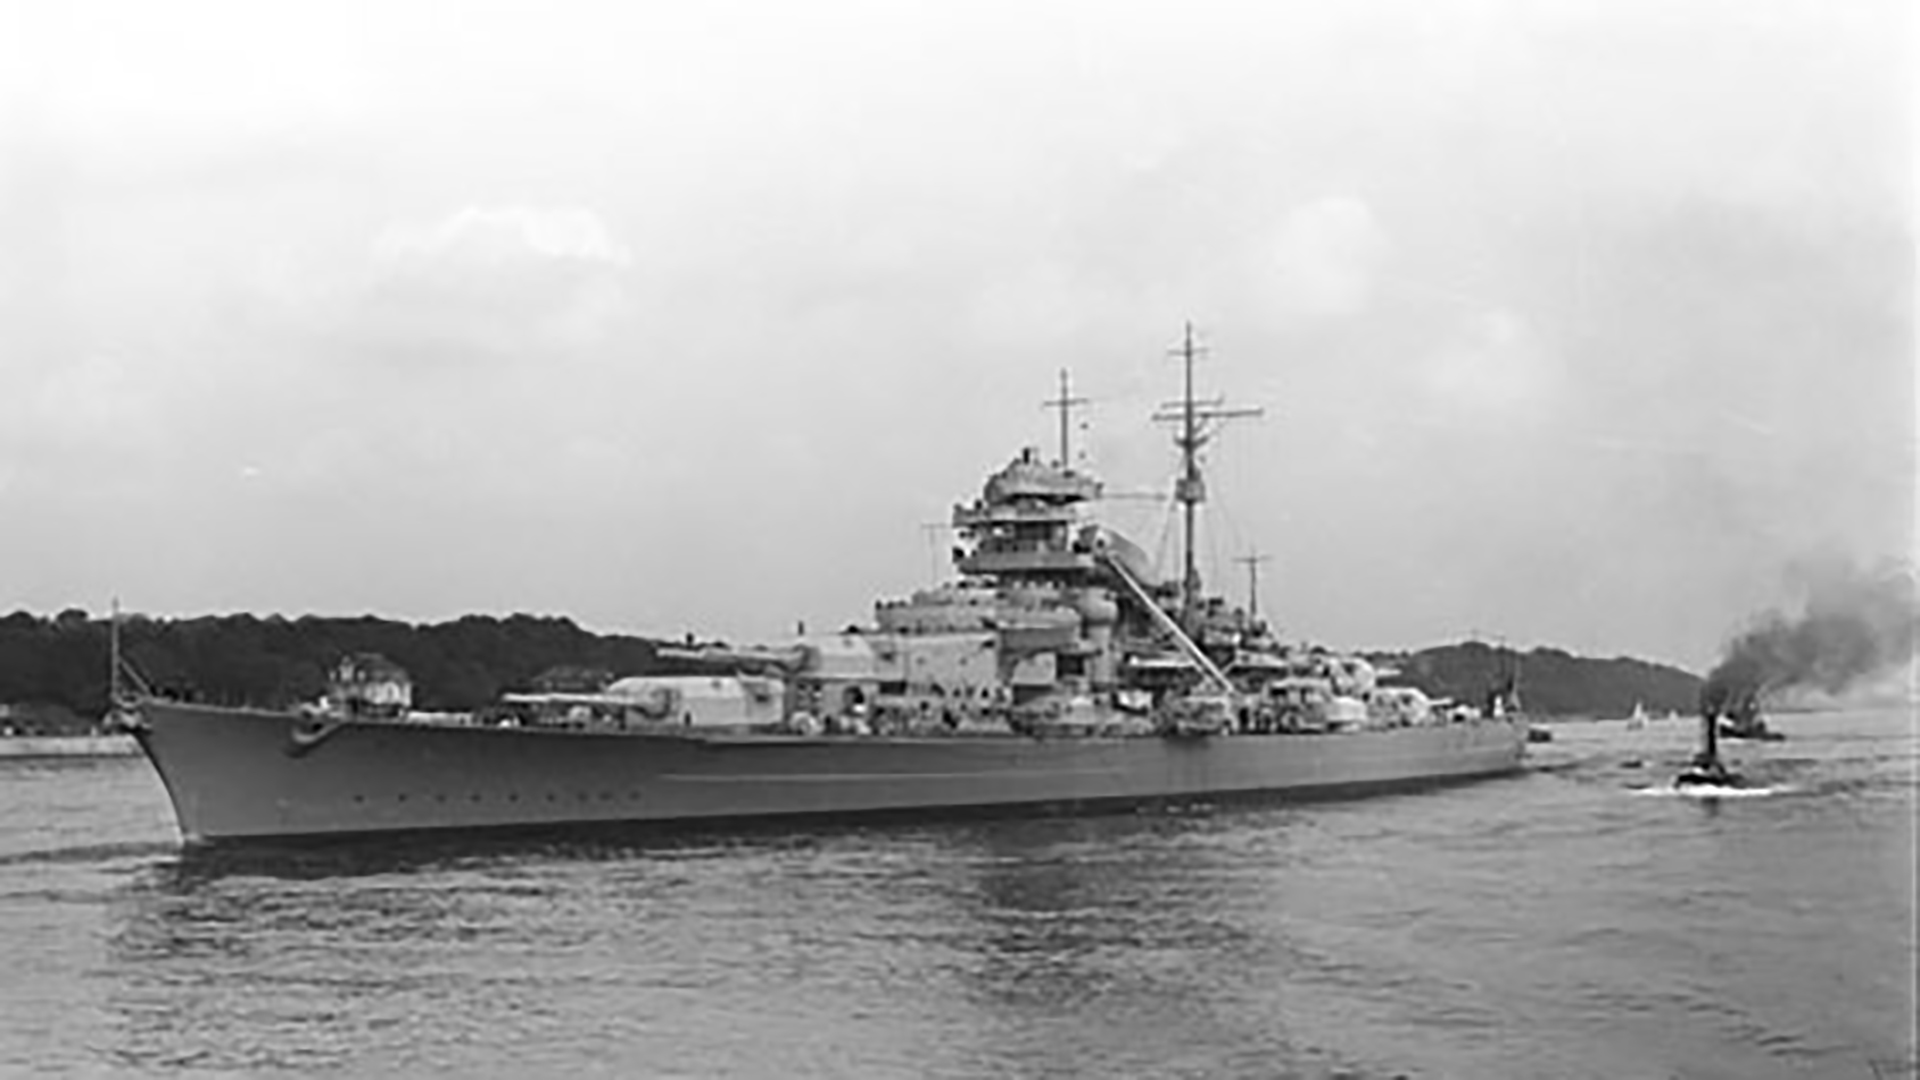 El acorazado Bismarck fue el más grande y poderoso acorazado alemán de la Segunda Guerra Mundial